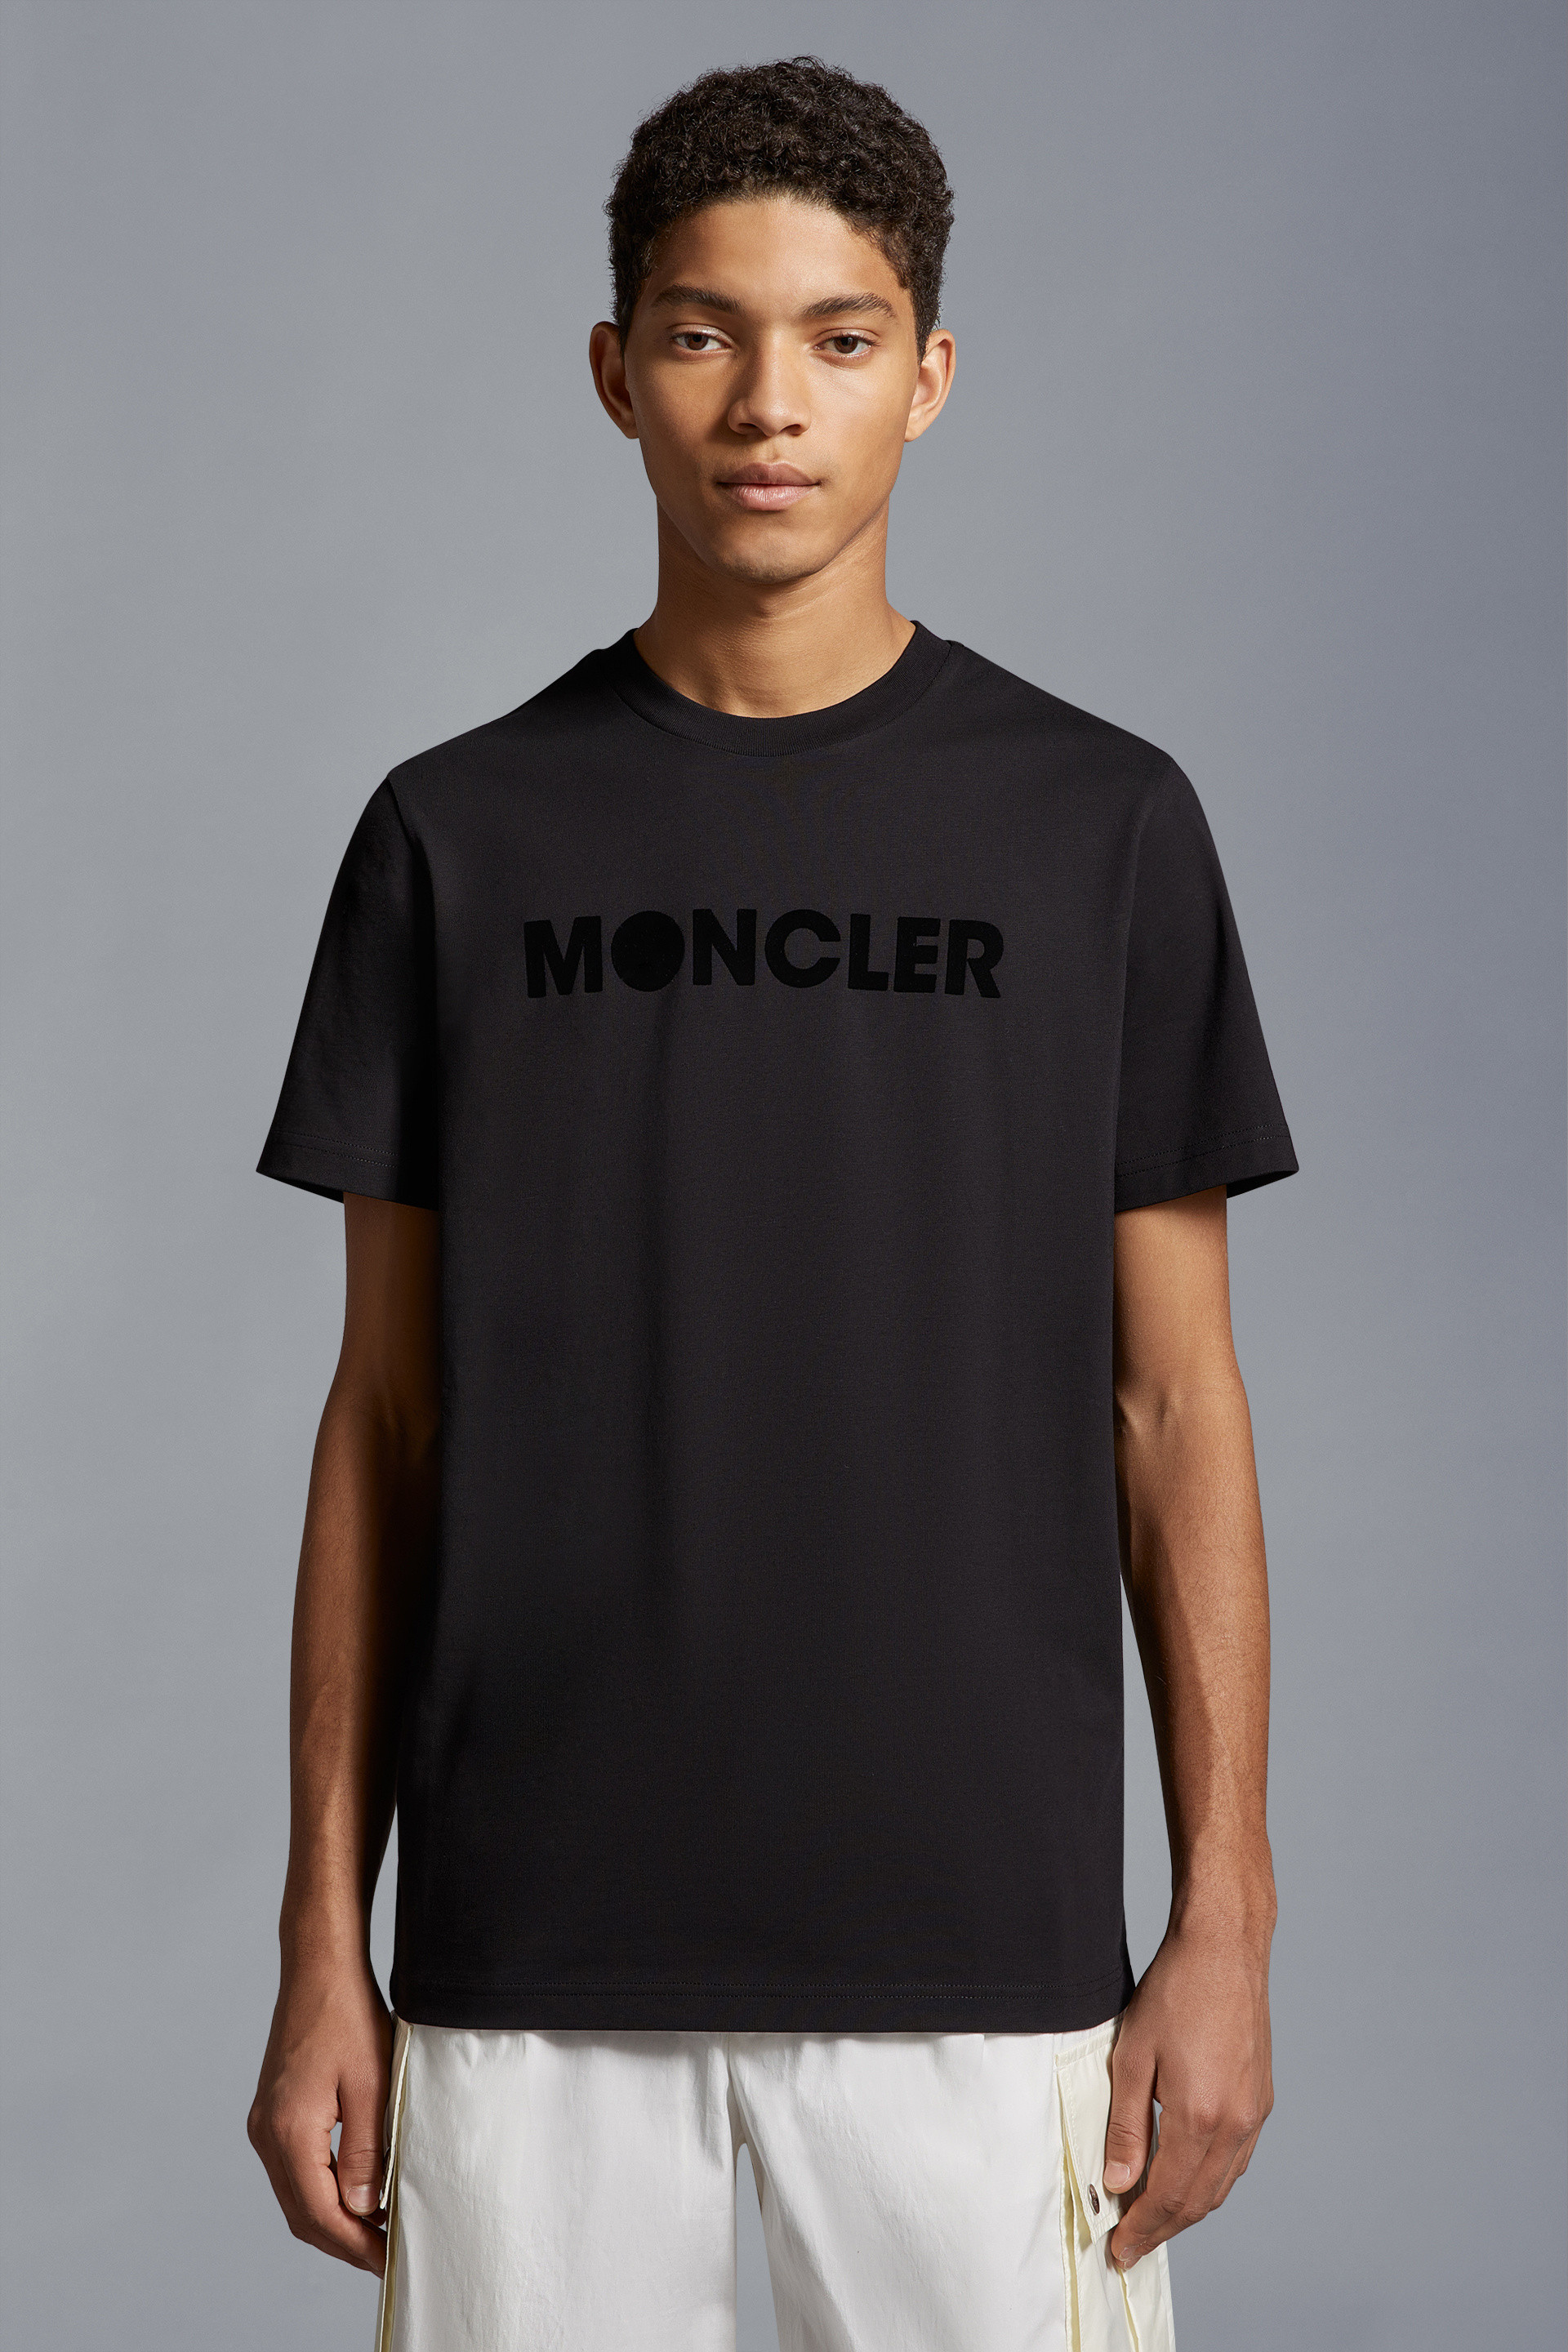 Moncler Genius MAGLIA T-SHIRT M 美品 ブラック肩幅54cm